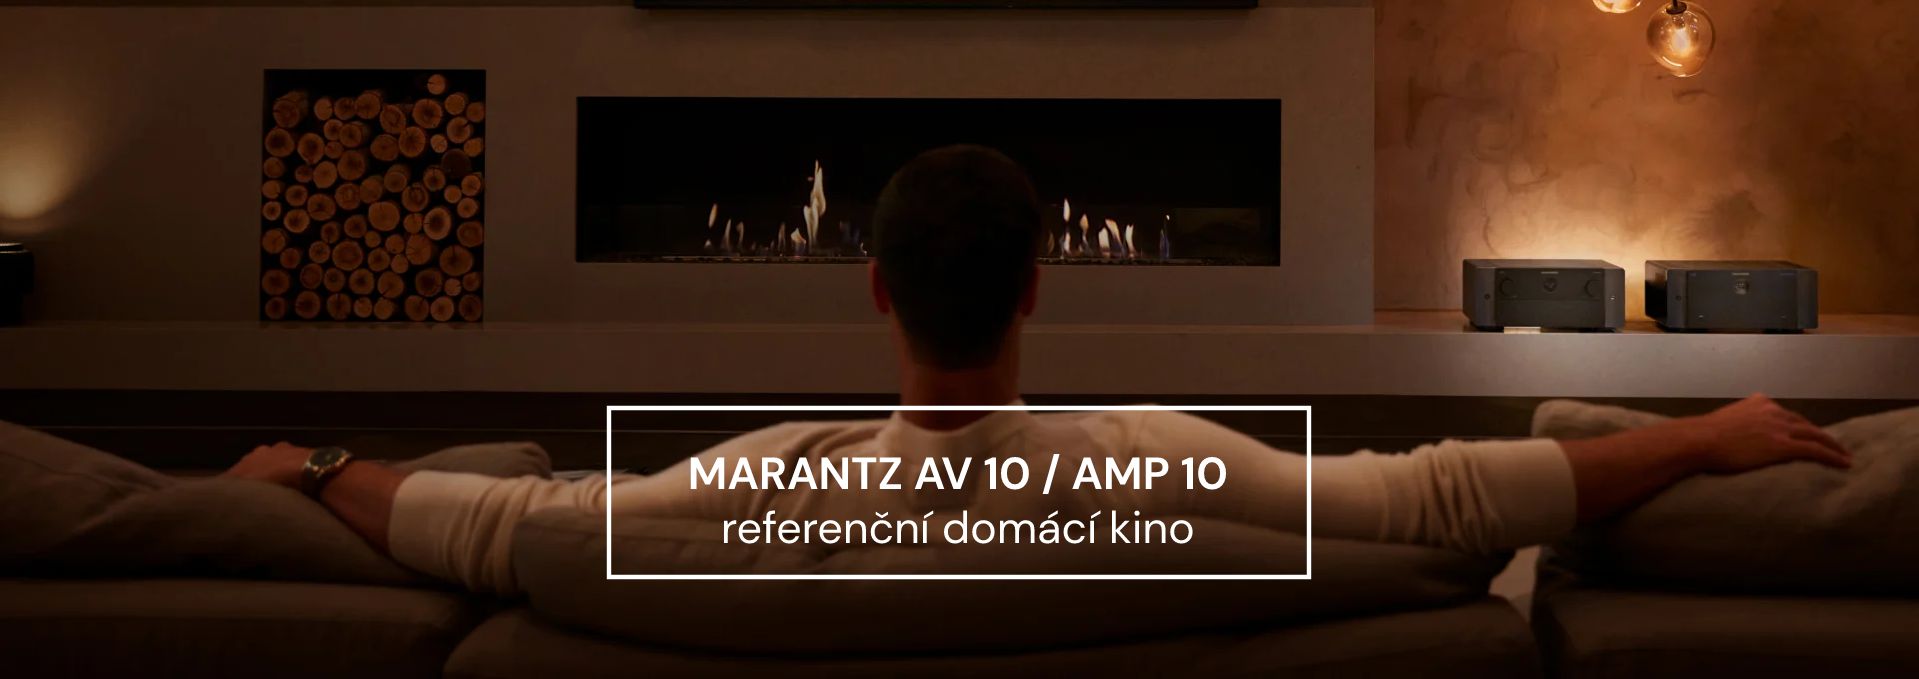 Marantz AV 10 / AMP 10